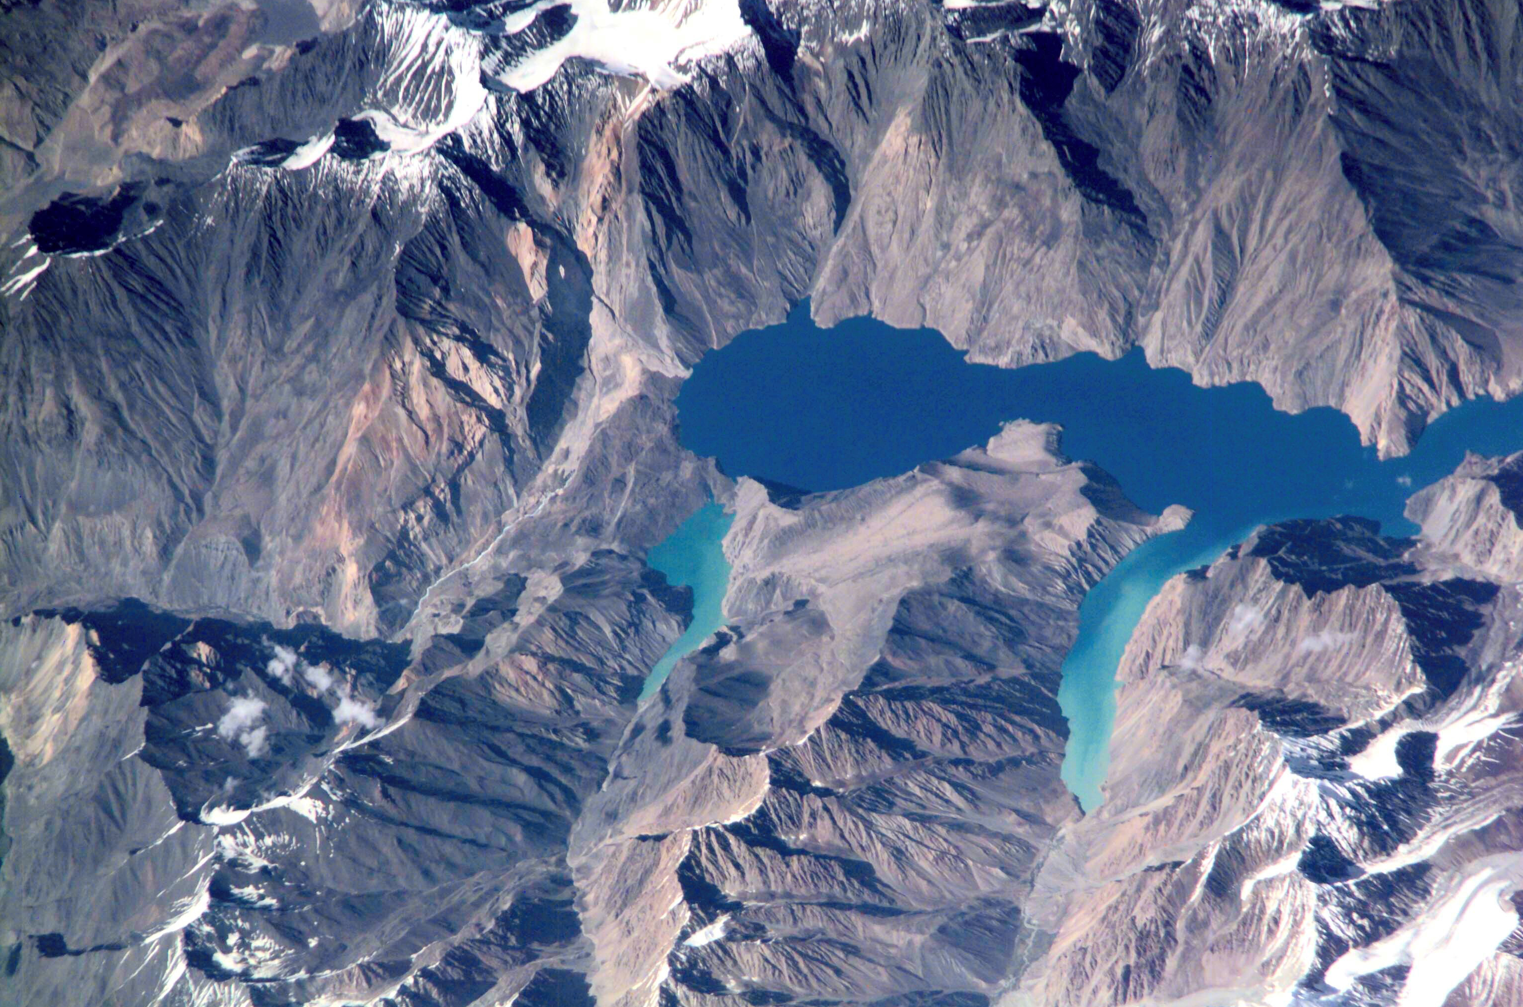 Usoi, Tajikistan Landslide